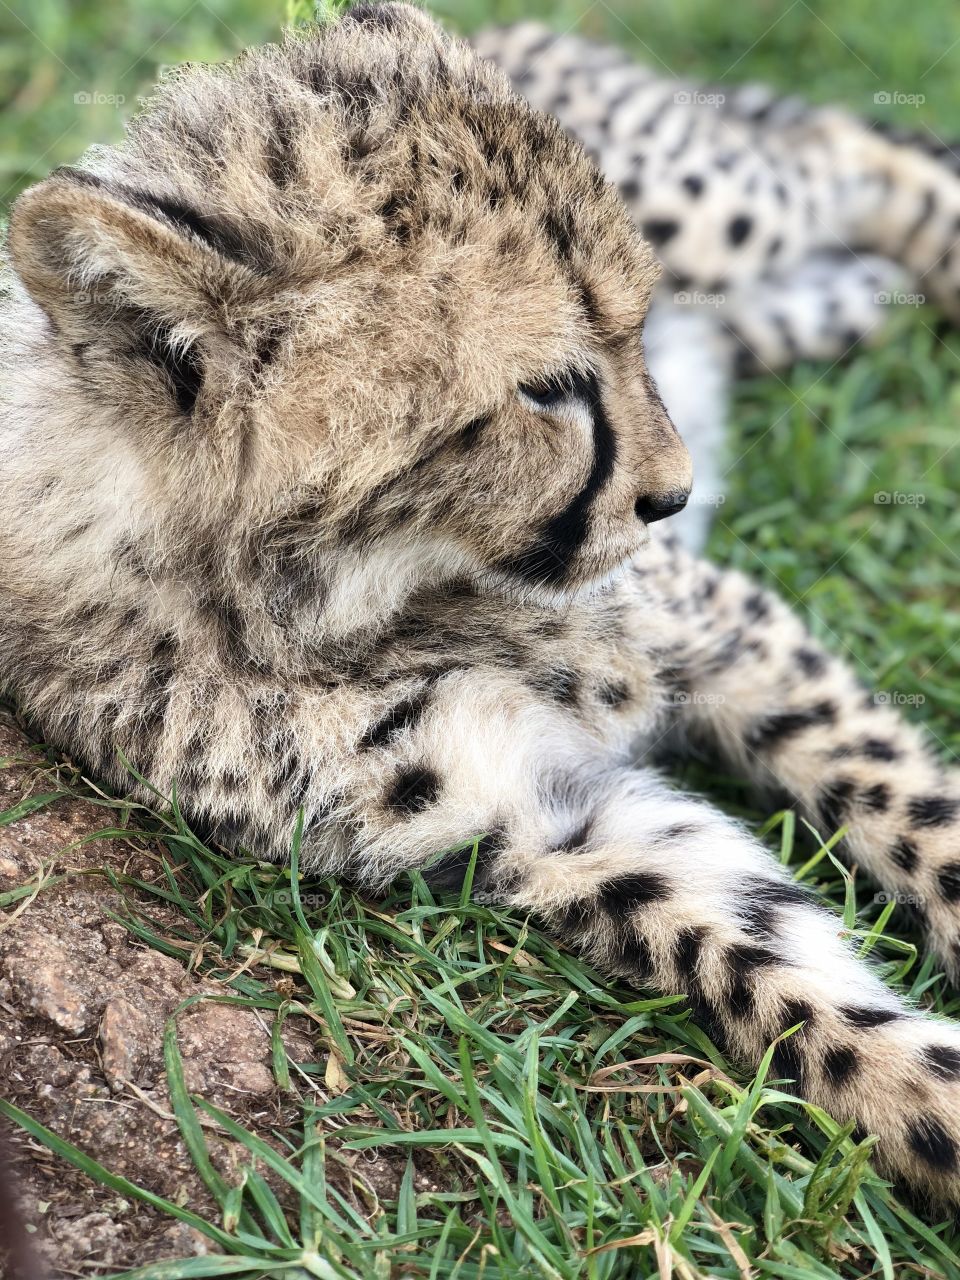 Close up of Baby cheetah 